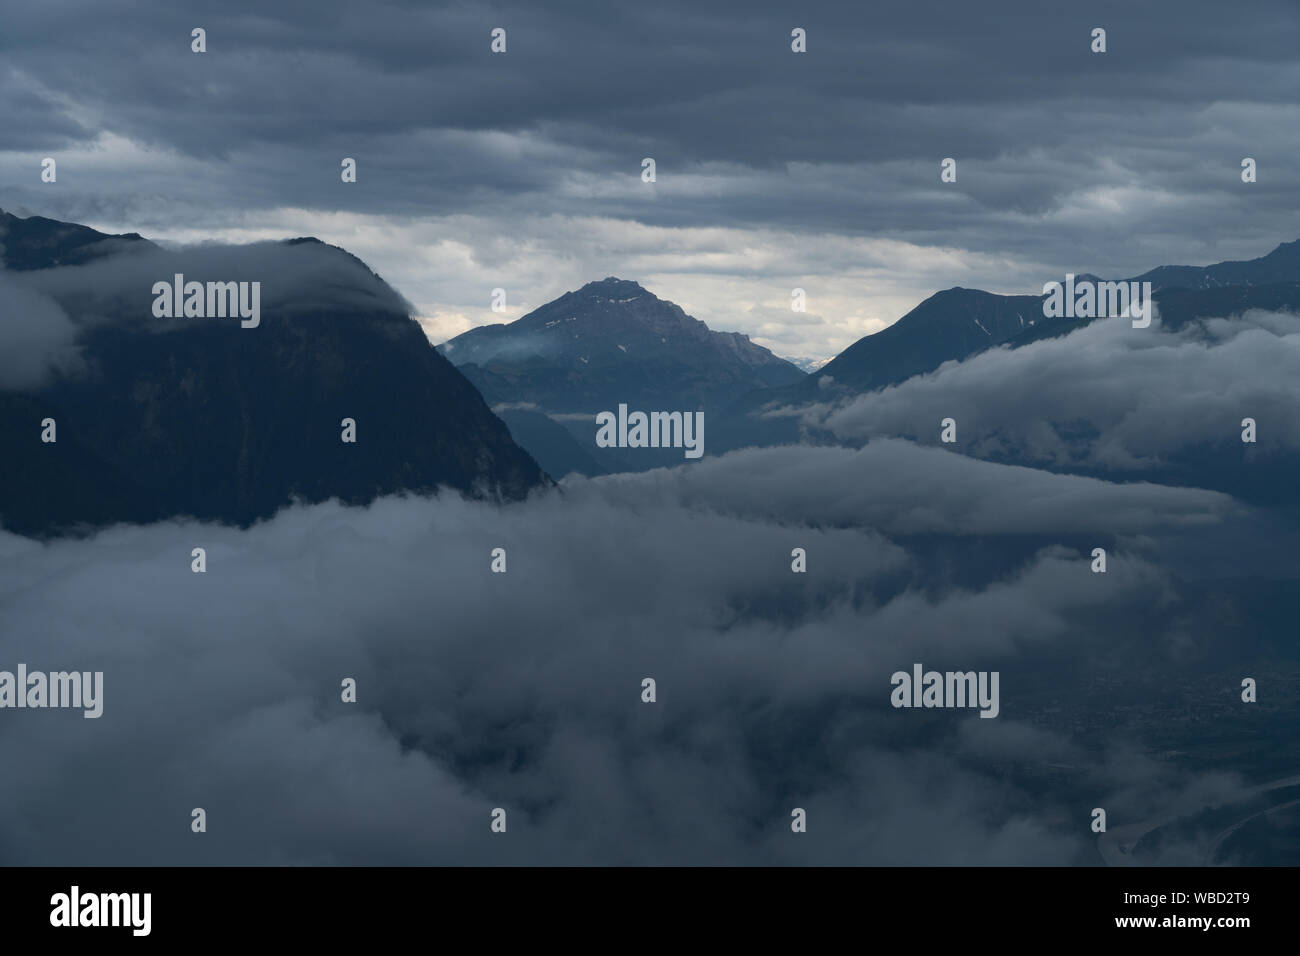 Eine Bergkette in den Wolken - Luftbild Stockfoto